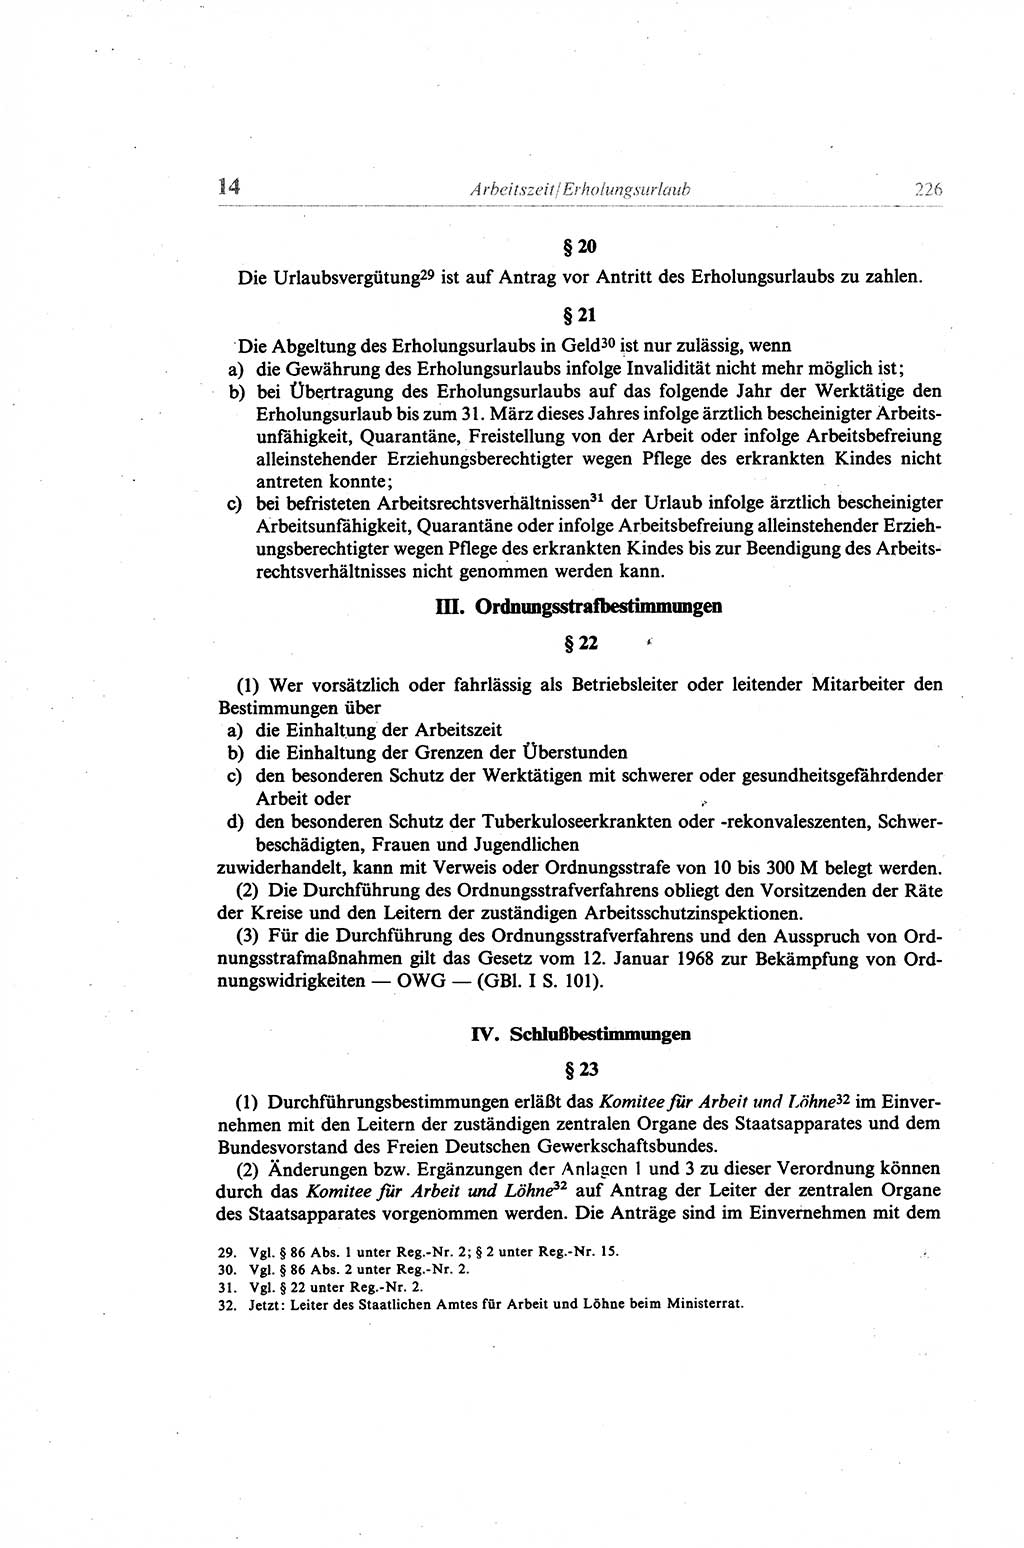 Gesetzbuch der Arbeit (GBA) und andere ausgewählte rechtliche Bestimmungen [Deutsche Demokratische Republik (DDR)] 1968, Seite 226 (GBA DDR 1968, S. 226)